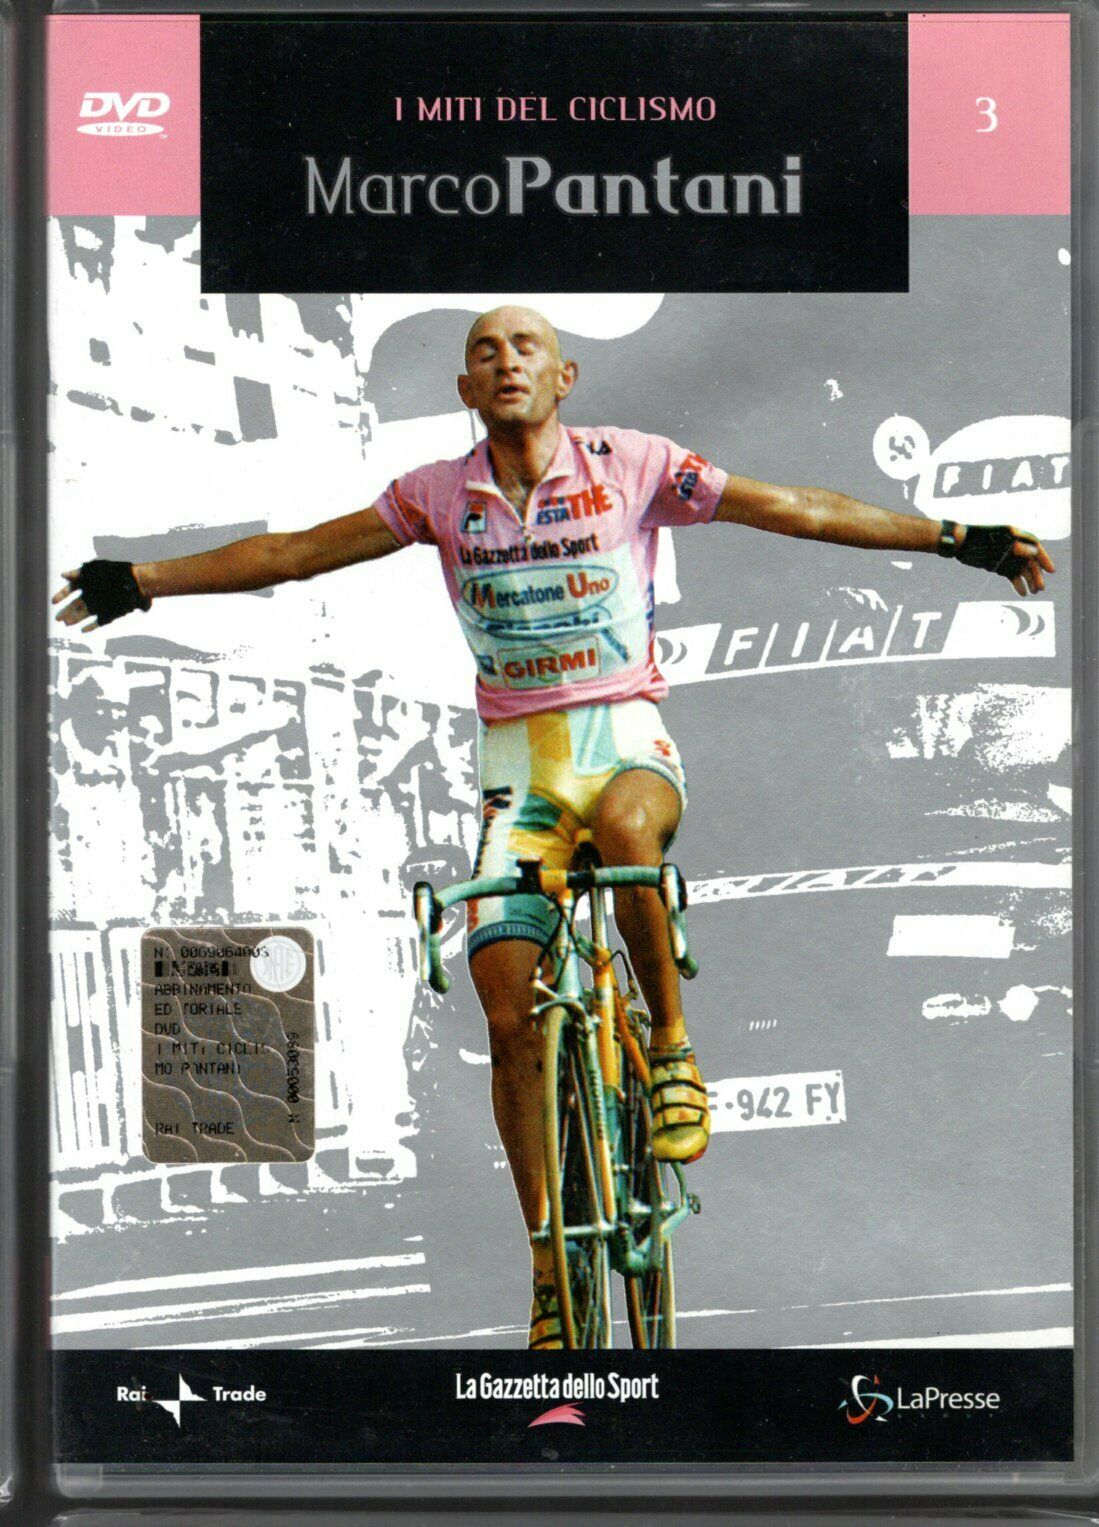 I miti del ciclismo - Marco Pantani 2005